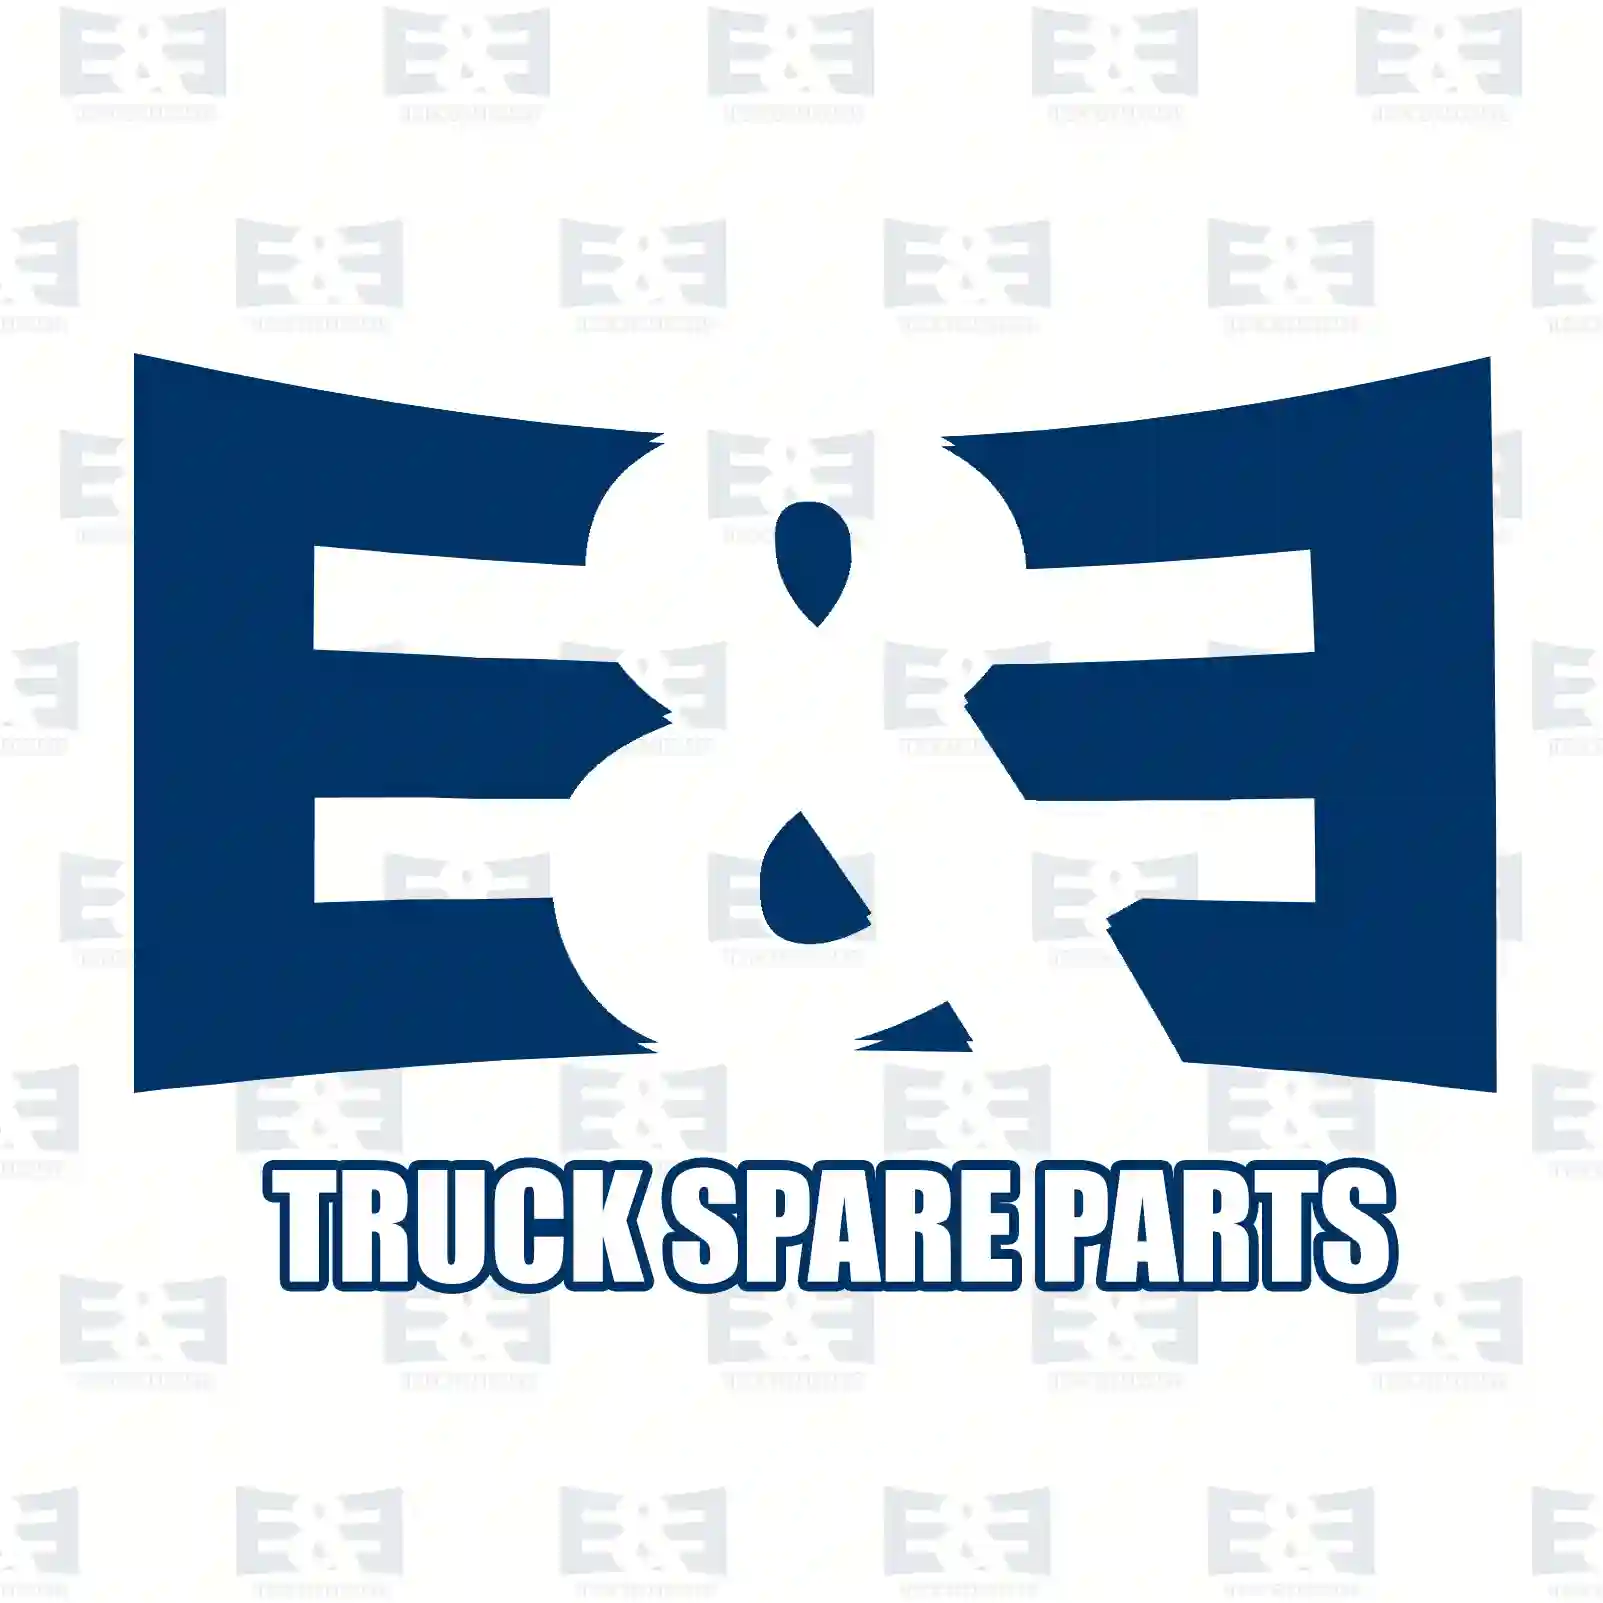 Oil seal, 2E2284818, 40102320, 40102321, 40102323, ZG02803-0008, ||  2E2284818 E&E Truck Spare Parts | Truck Spare Parts, Auotomotive Spare Parts Oil seal, 2E2284818, 40102320, 40102321, 40102323, ZG02803-0008, ||  2E2284818 E&E Truck Spare Parts | Truck Spare Parts, Auotomotive Spare Parts